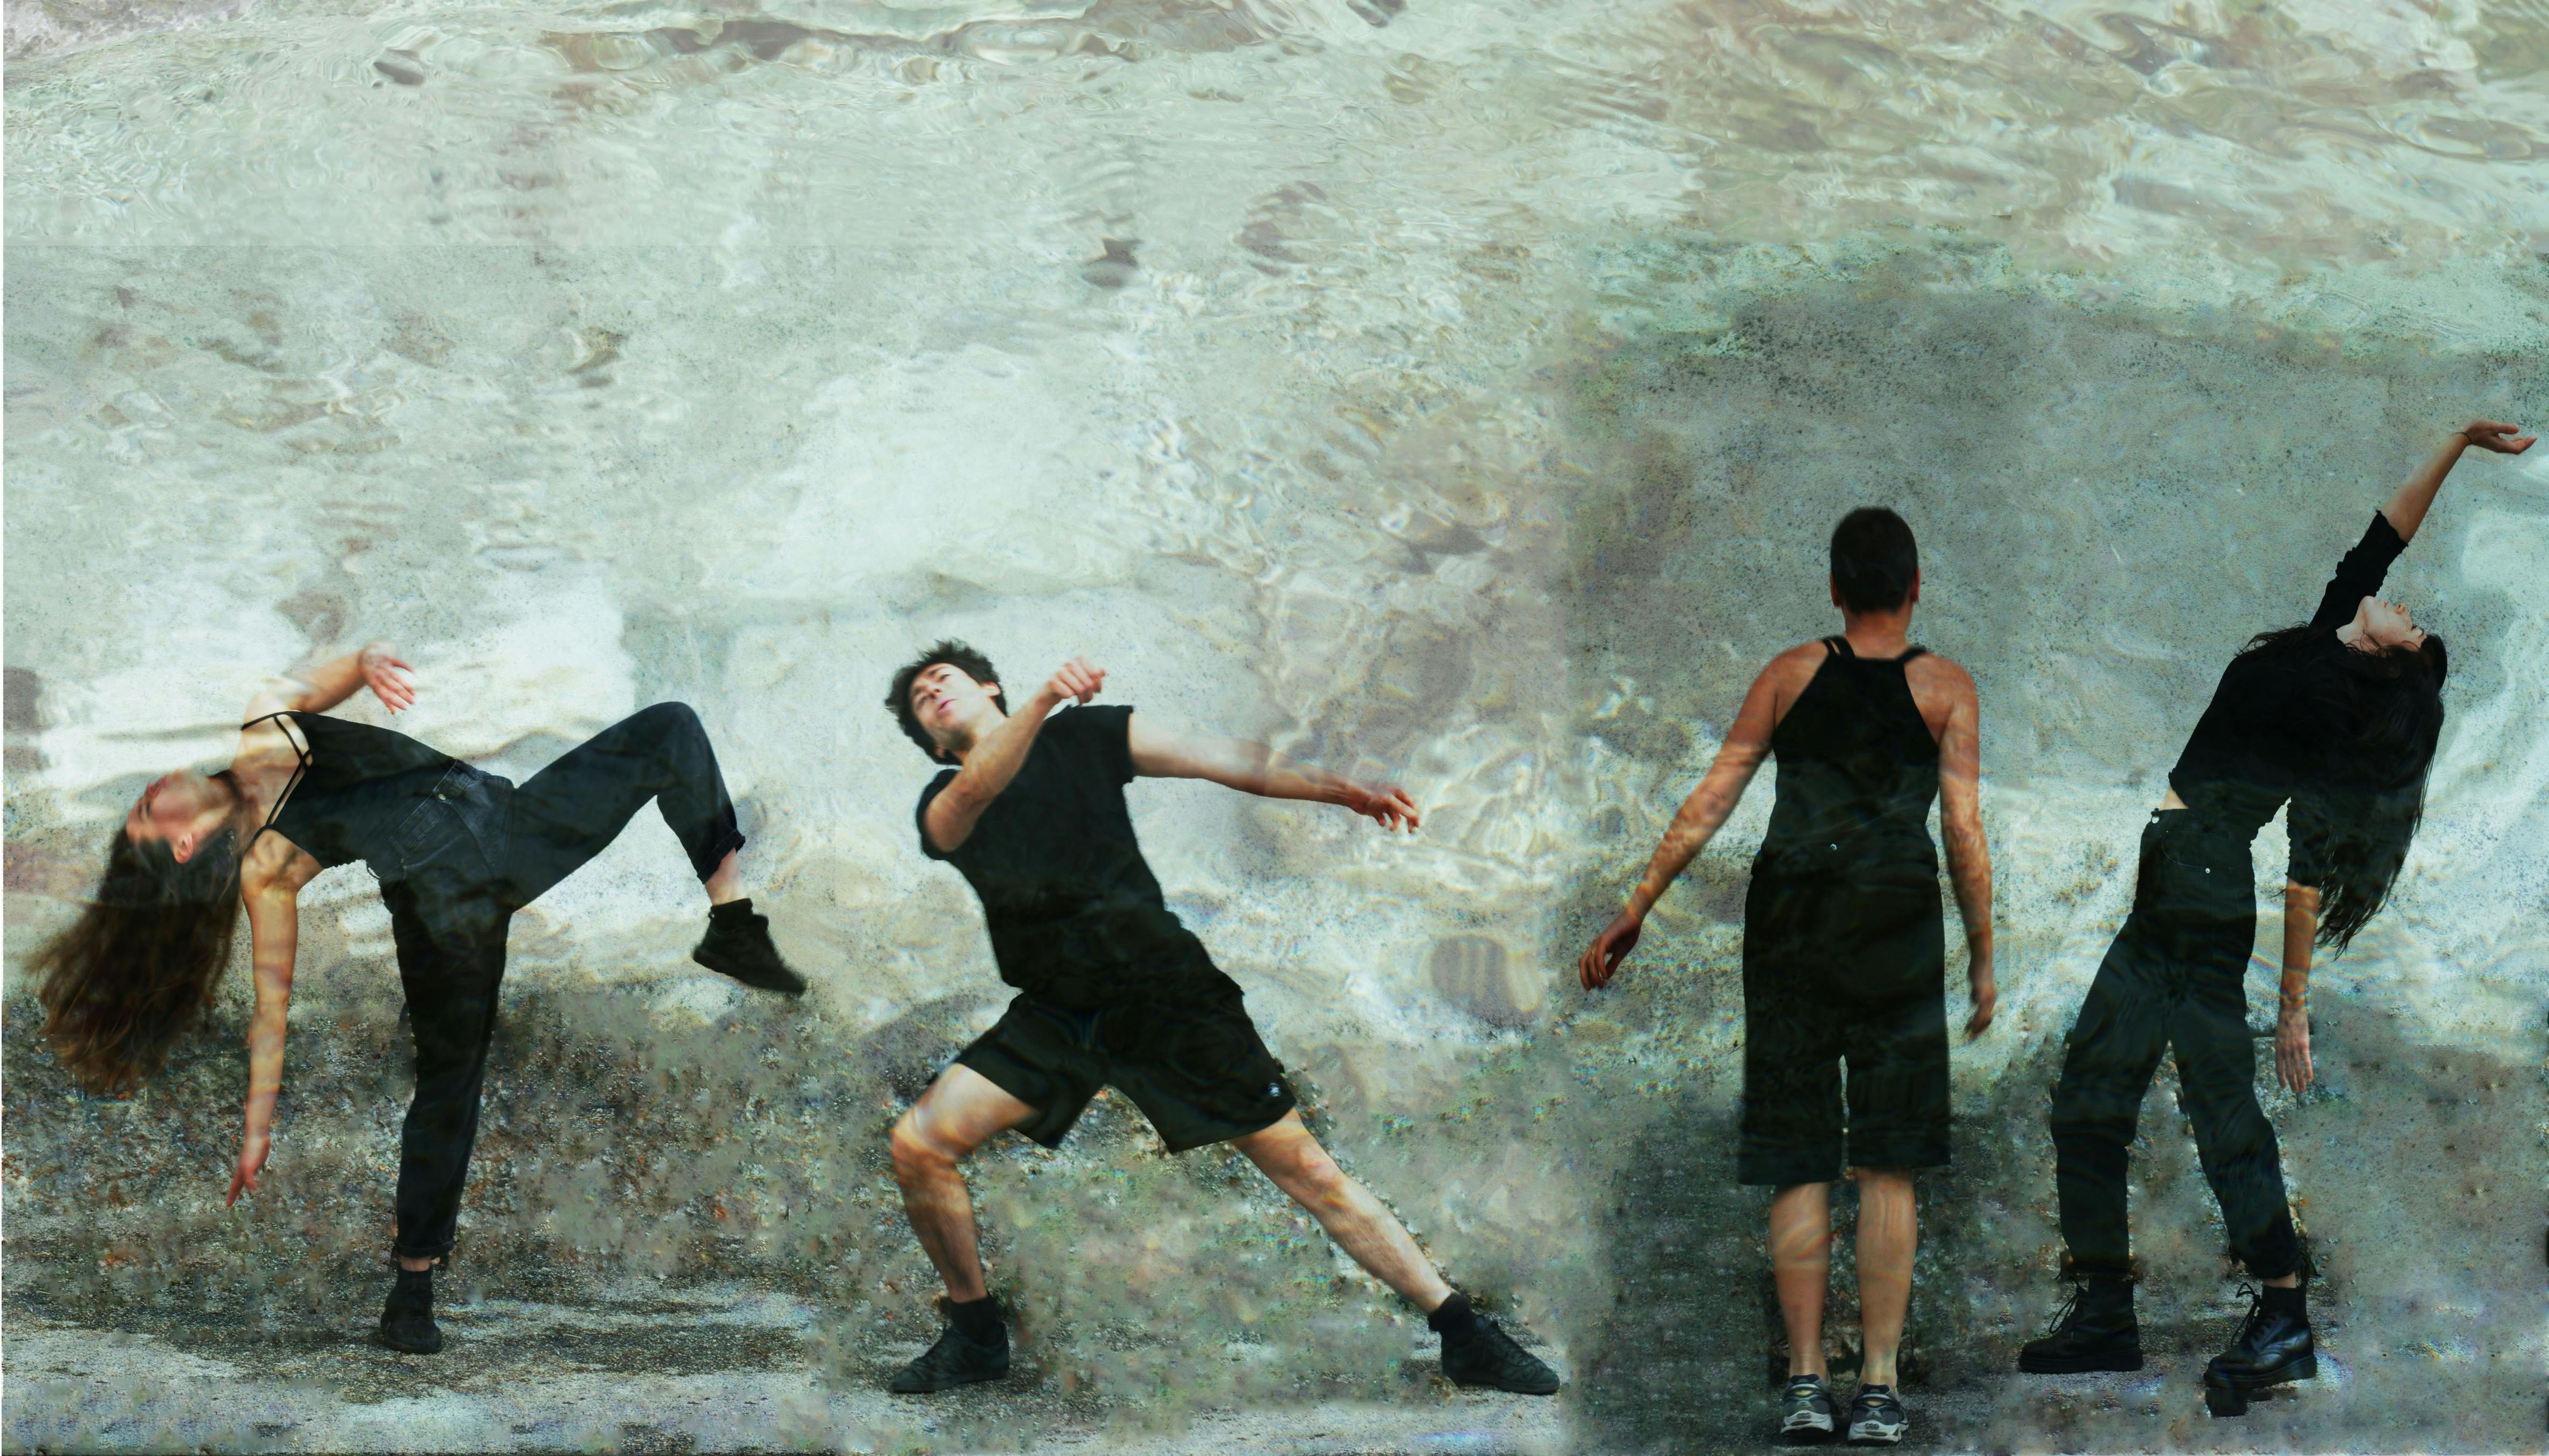 Quattro danzatori in movimento - da destra verso sinistra: due in posizione frontale, uno di spalle e una laterale - con sfondo che imita il riflesso dell'acqua